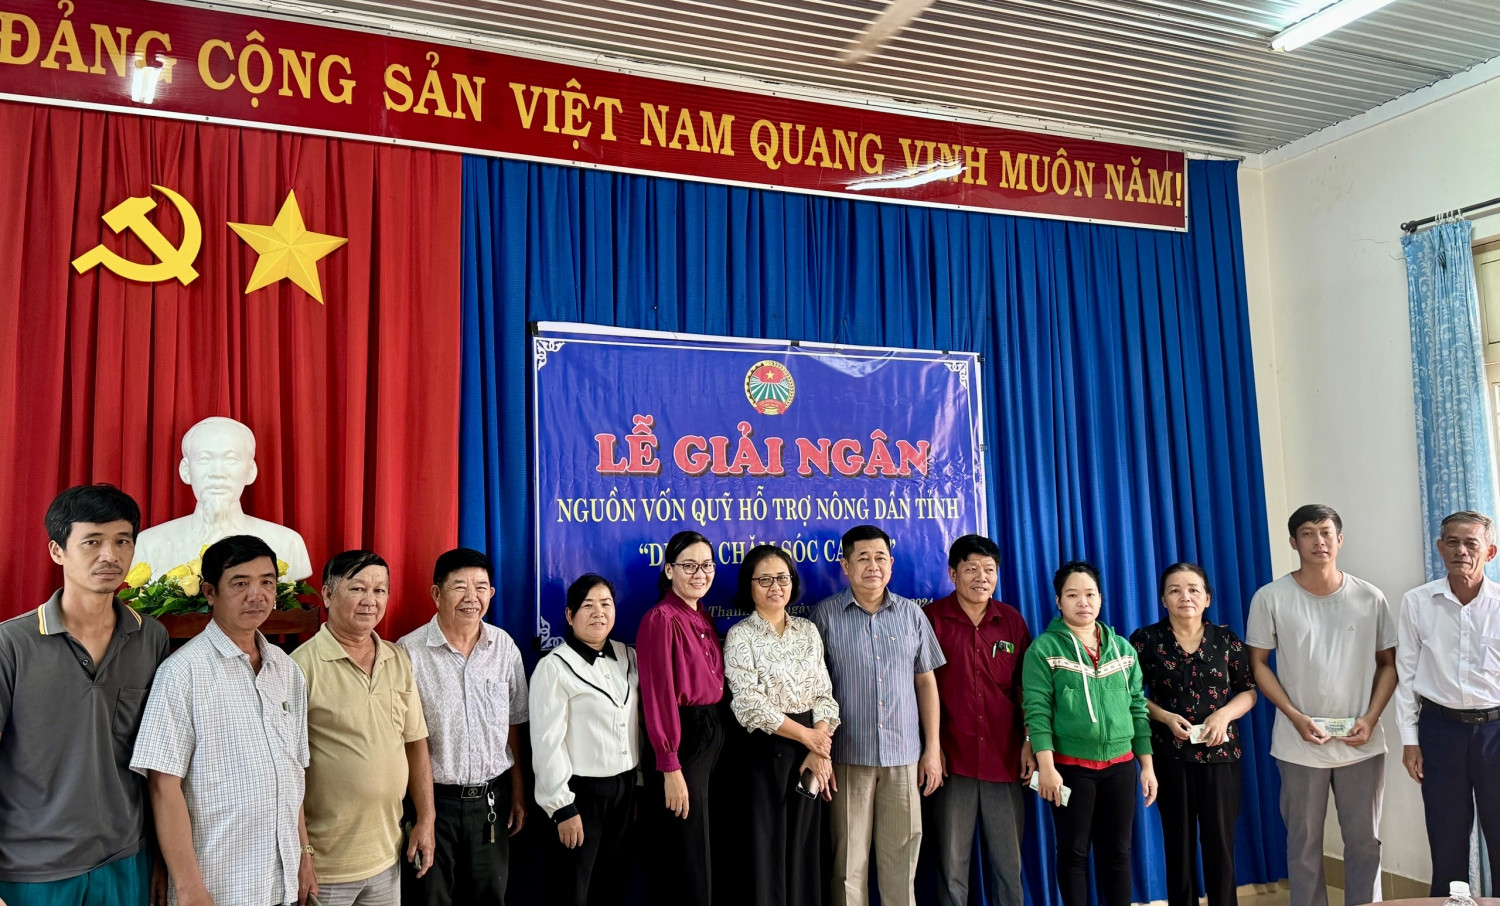 Hội Nông dân xã Thạnh Tây (huyện Tân Biên): Giải ngân 300.000.000 đồng thực hiện dự án “Chăm sóc cây cao su”